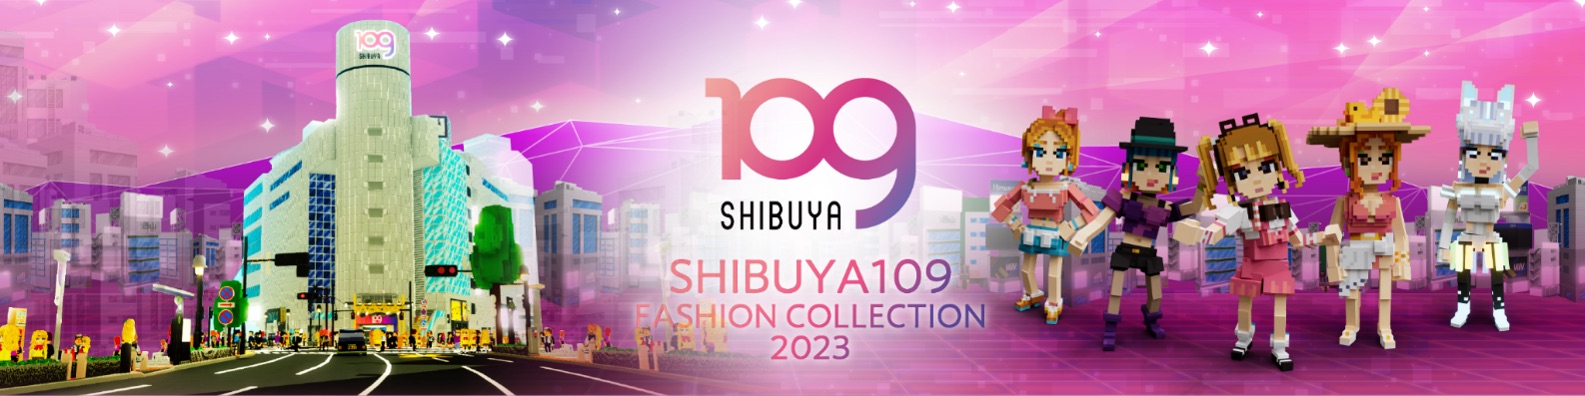 渋谷109、渋谷、109、SHIBUYA109 FASHION COLLECTION 2023、SHIBUYA109 LAND、メタバース